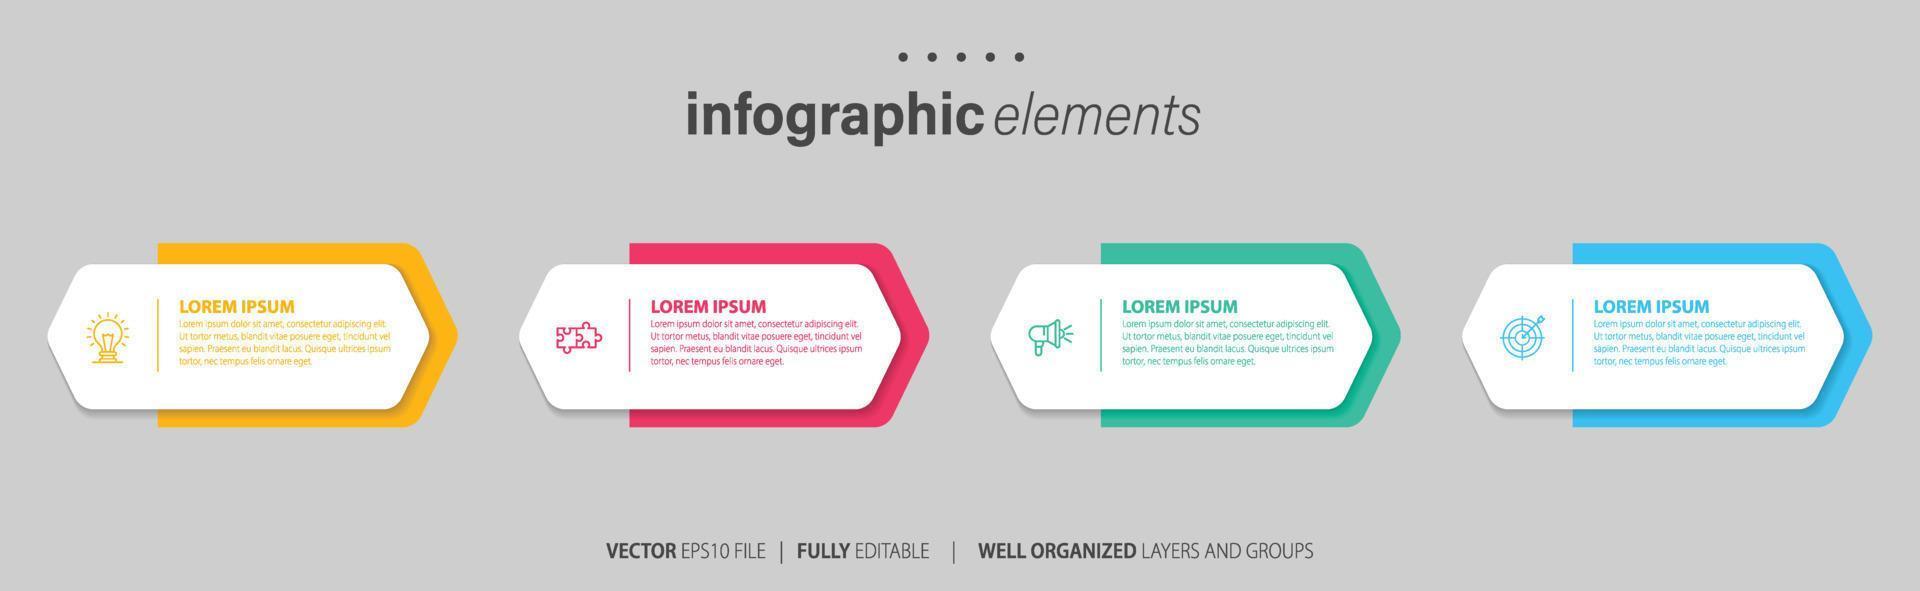 infografía elementos datos visualización vector